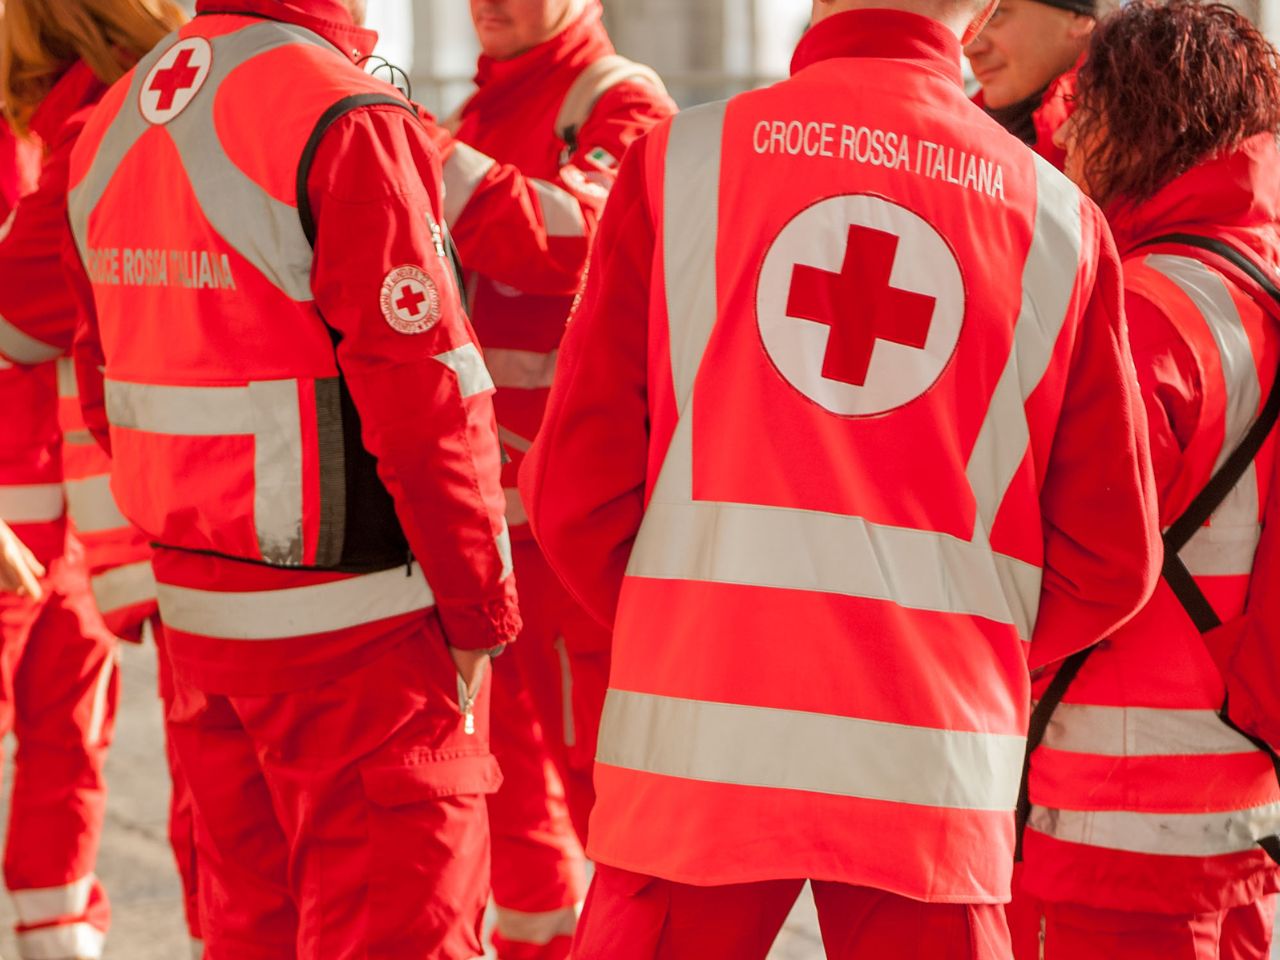 Falsi volontari chiedono offerte in nome della Croce Rossa: l’appello del Presidente Galvano